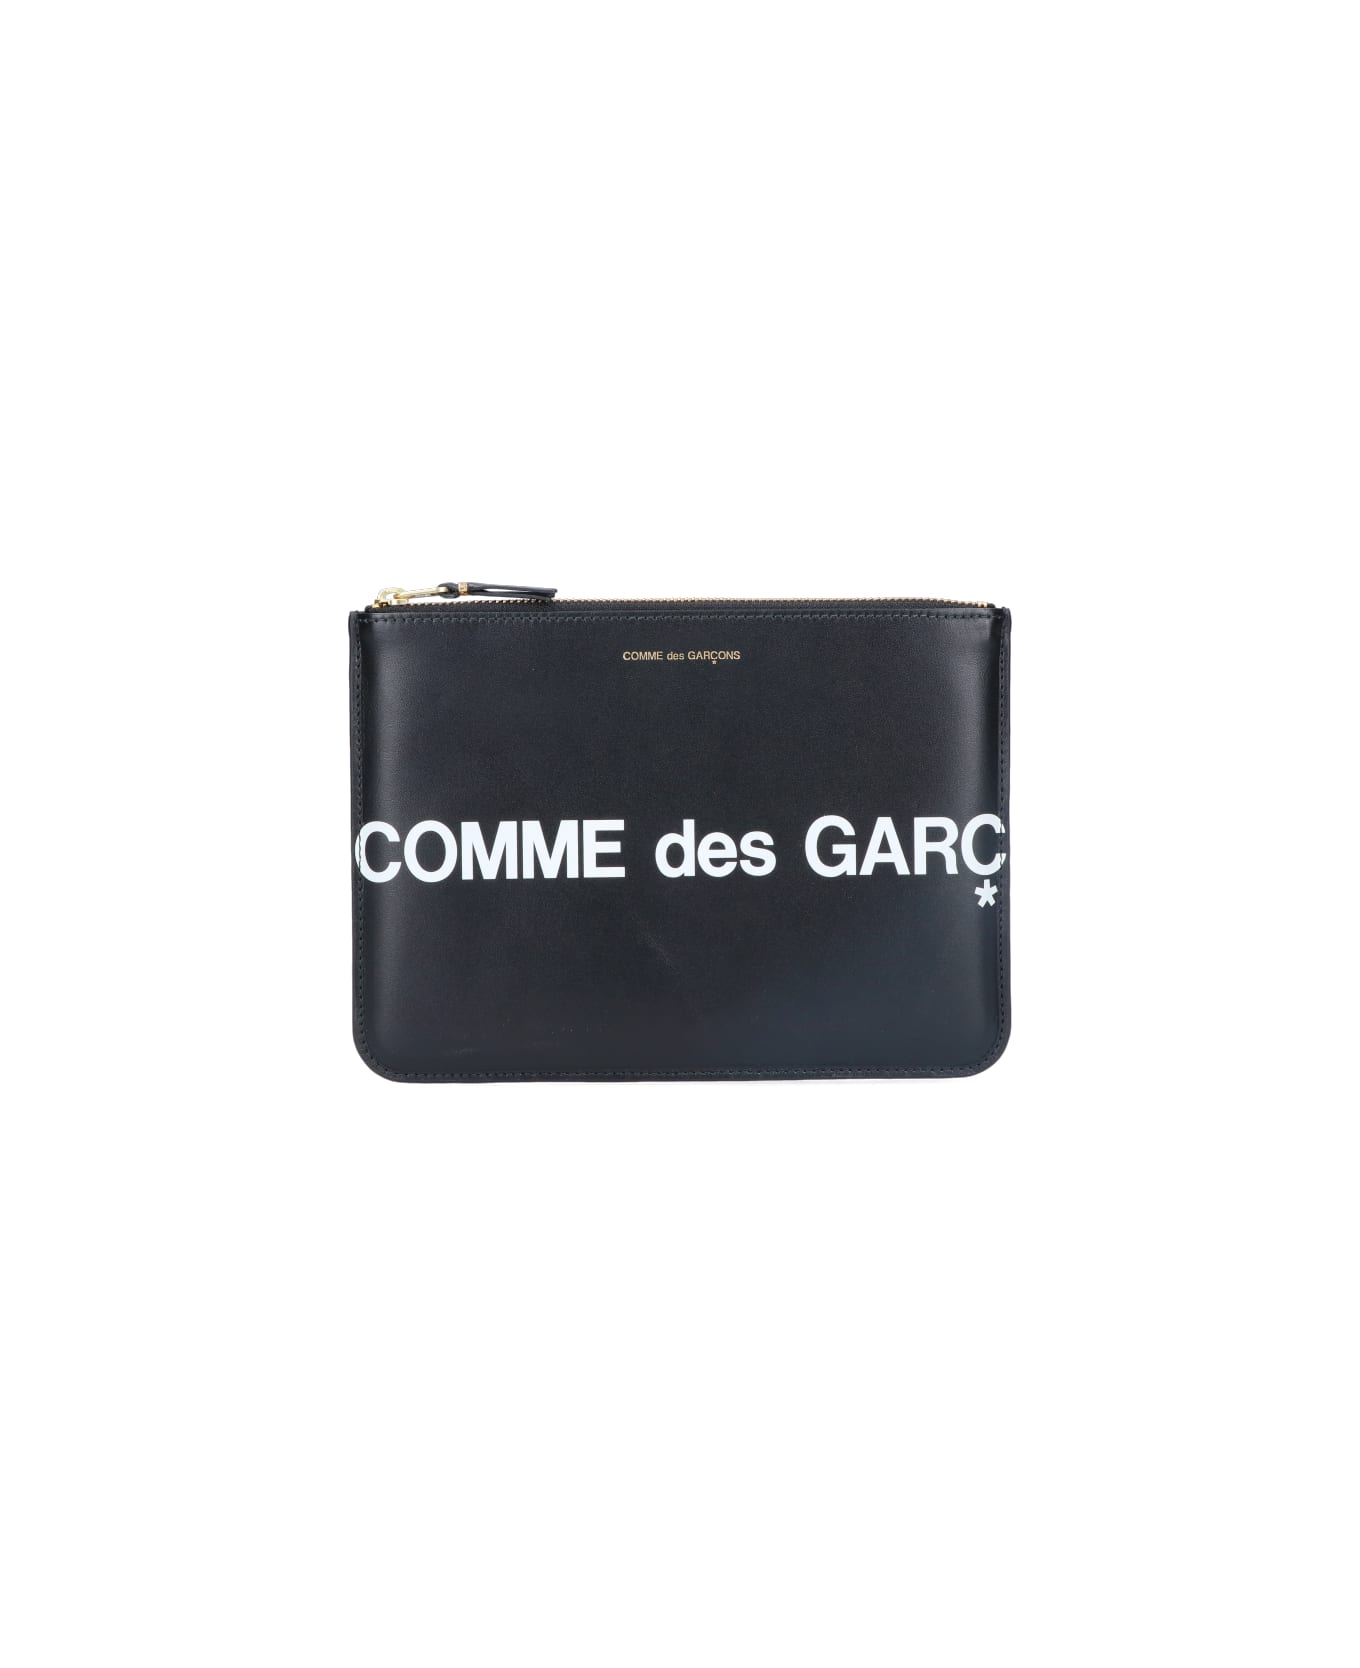 Comme des Garçons Wallet 'huge Logo' pouch - Black  